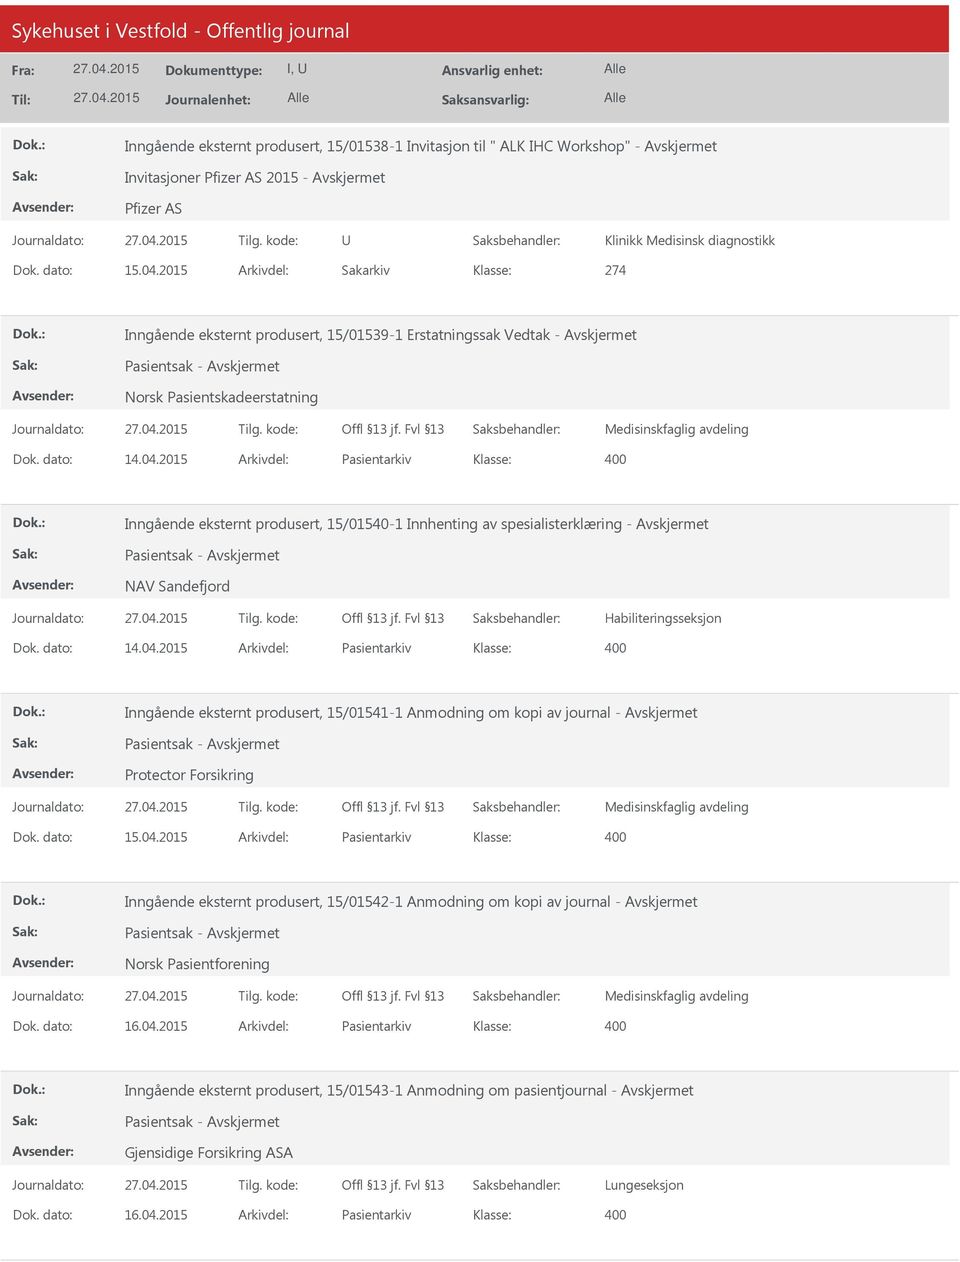 2015 Arkivdel: Pasientarkiv Inngående eksternt produsert, 15/01540-1 Innhenting av spesialisterklæring - Pasientsak - NAV Sandefjord Habiliteringsseksjon Dok. dato: 14.04.